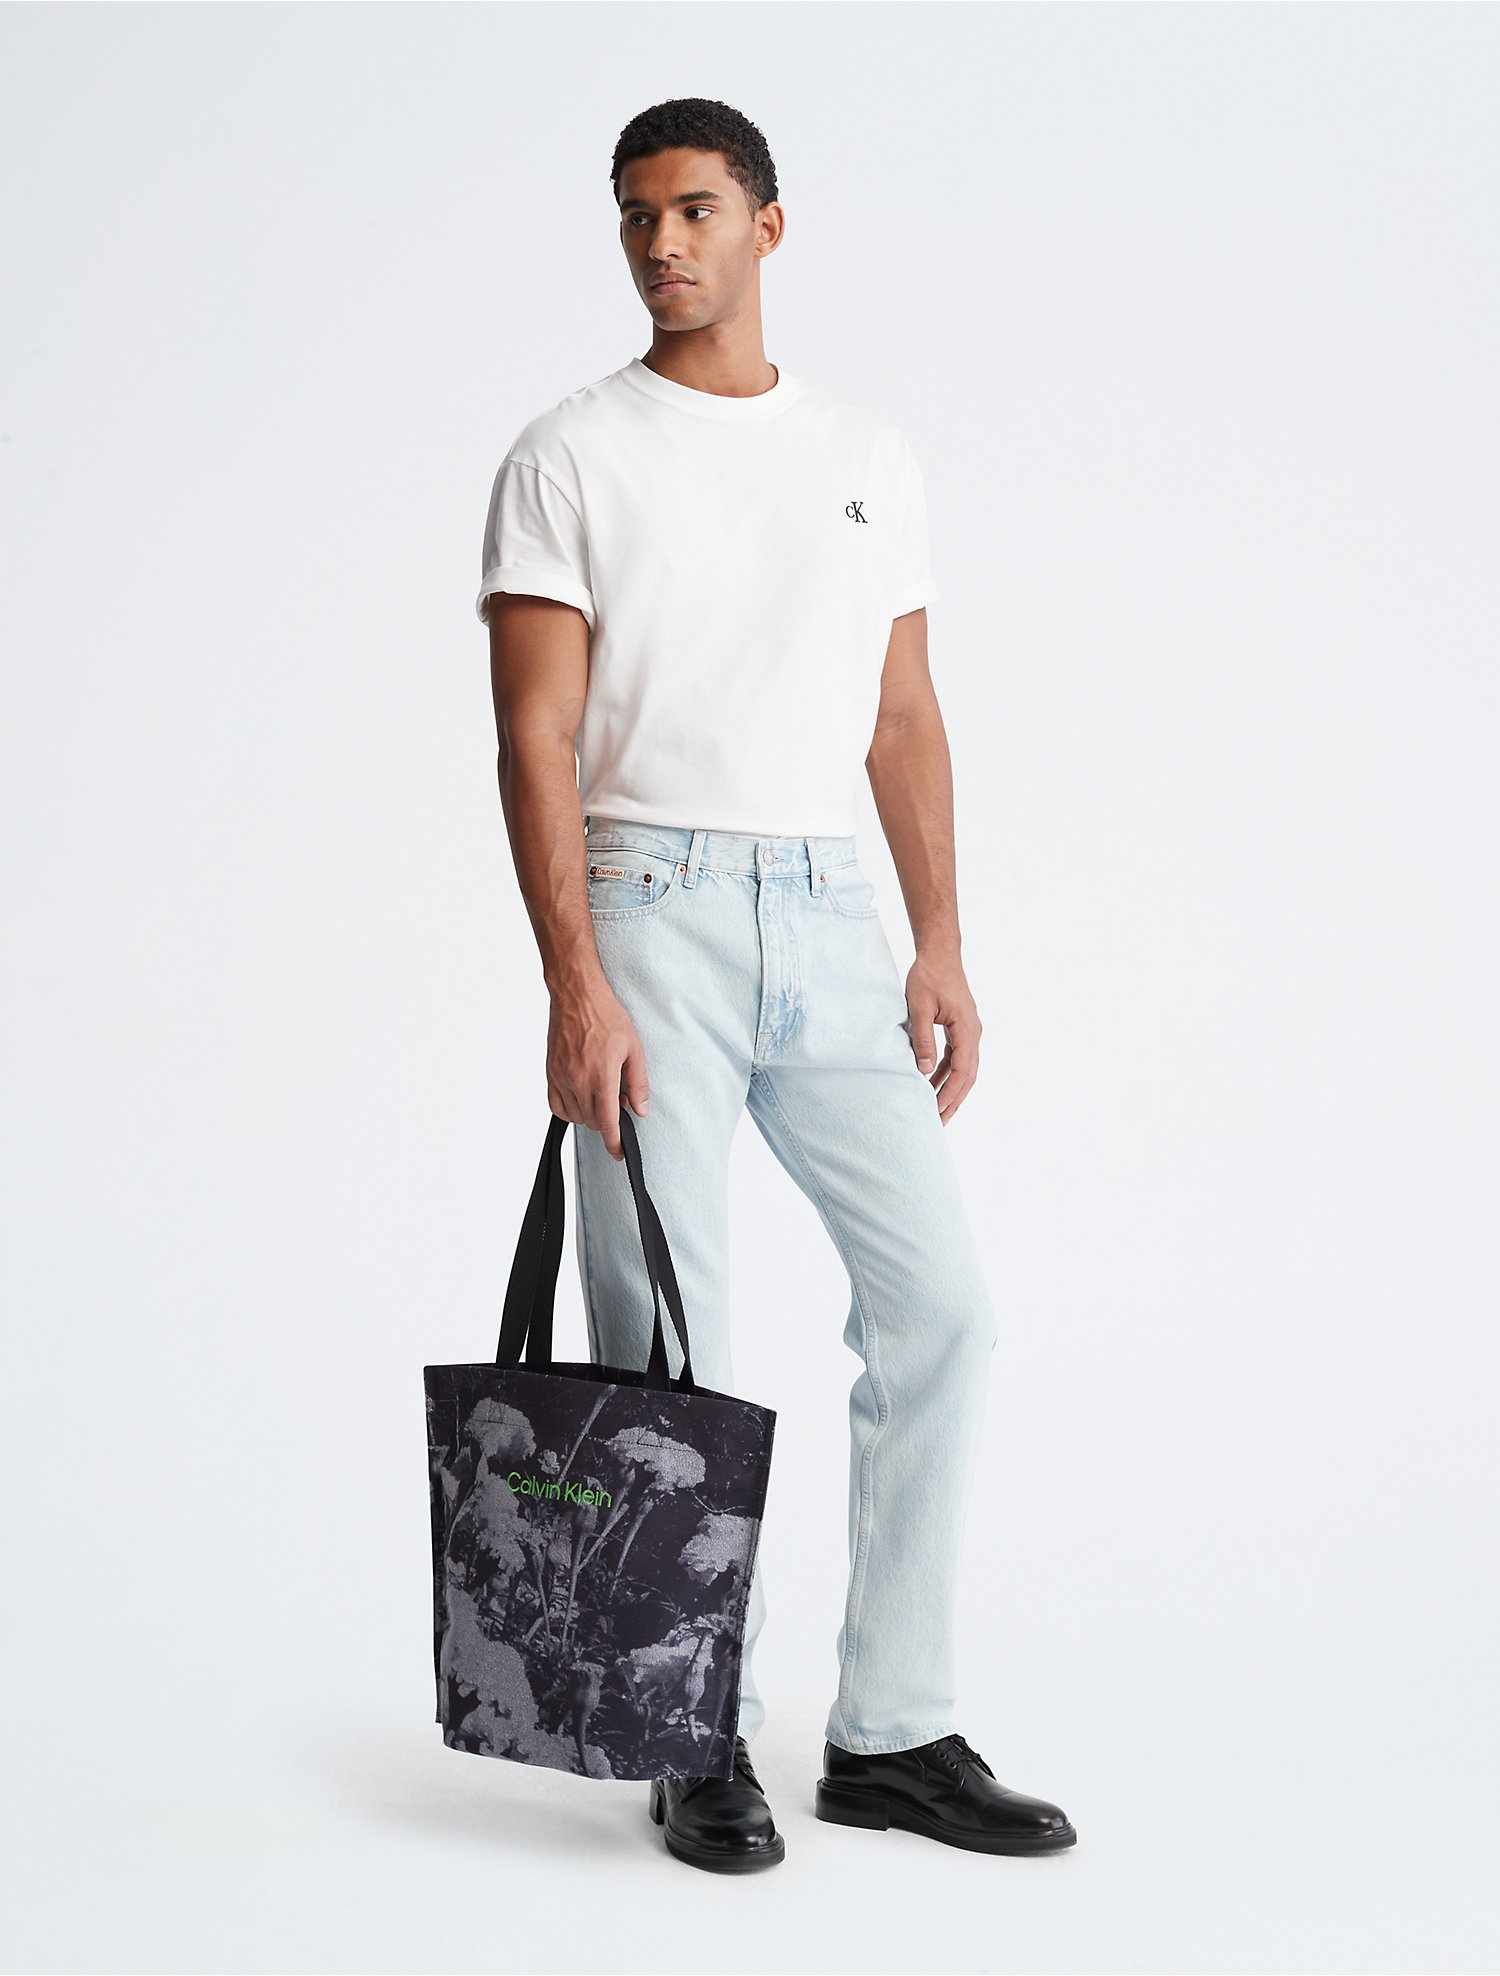 Knooppunt Ontdek Interpunctie Canvas Pinched Tote Bag | Calvin Klein